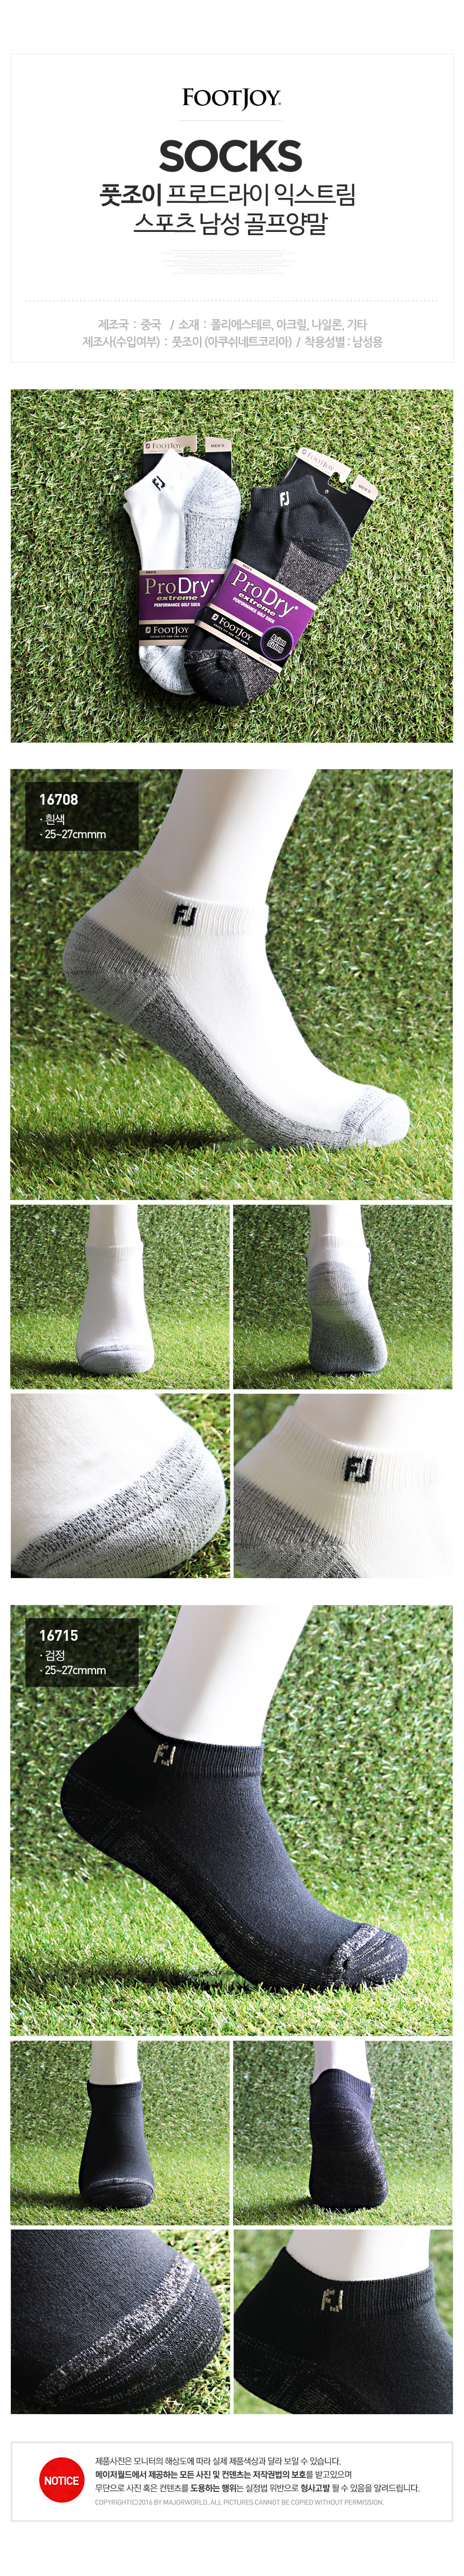 footjoy_prodry_extreme_sport_m_socks.jpg